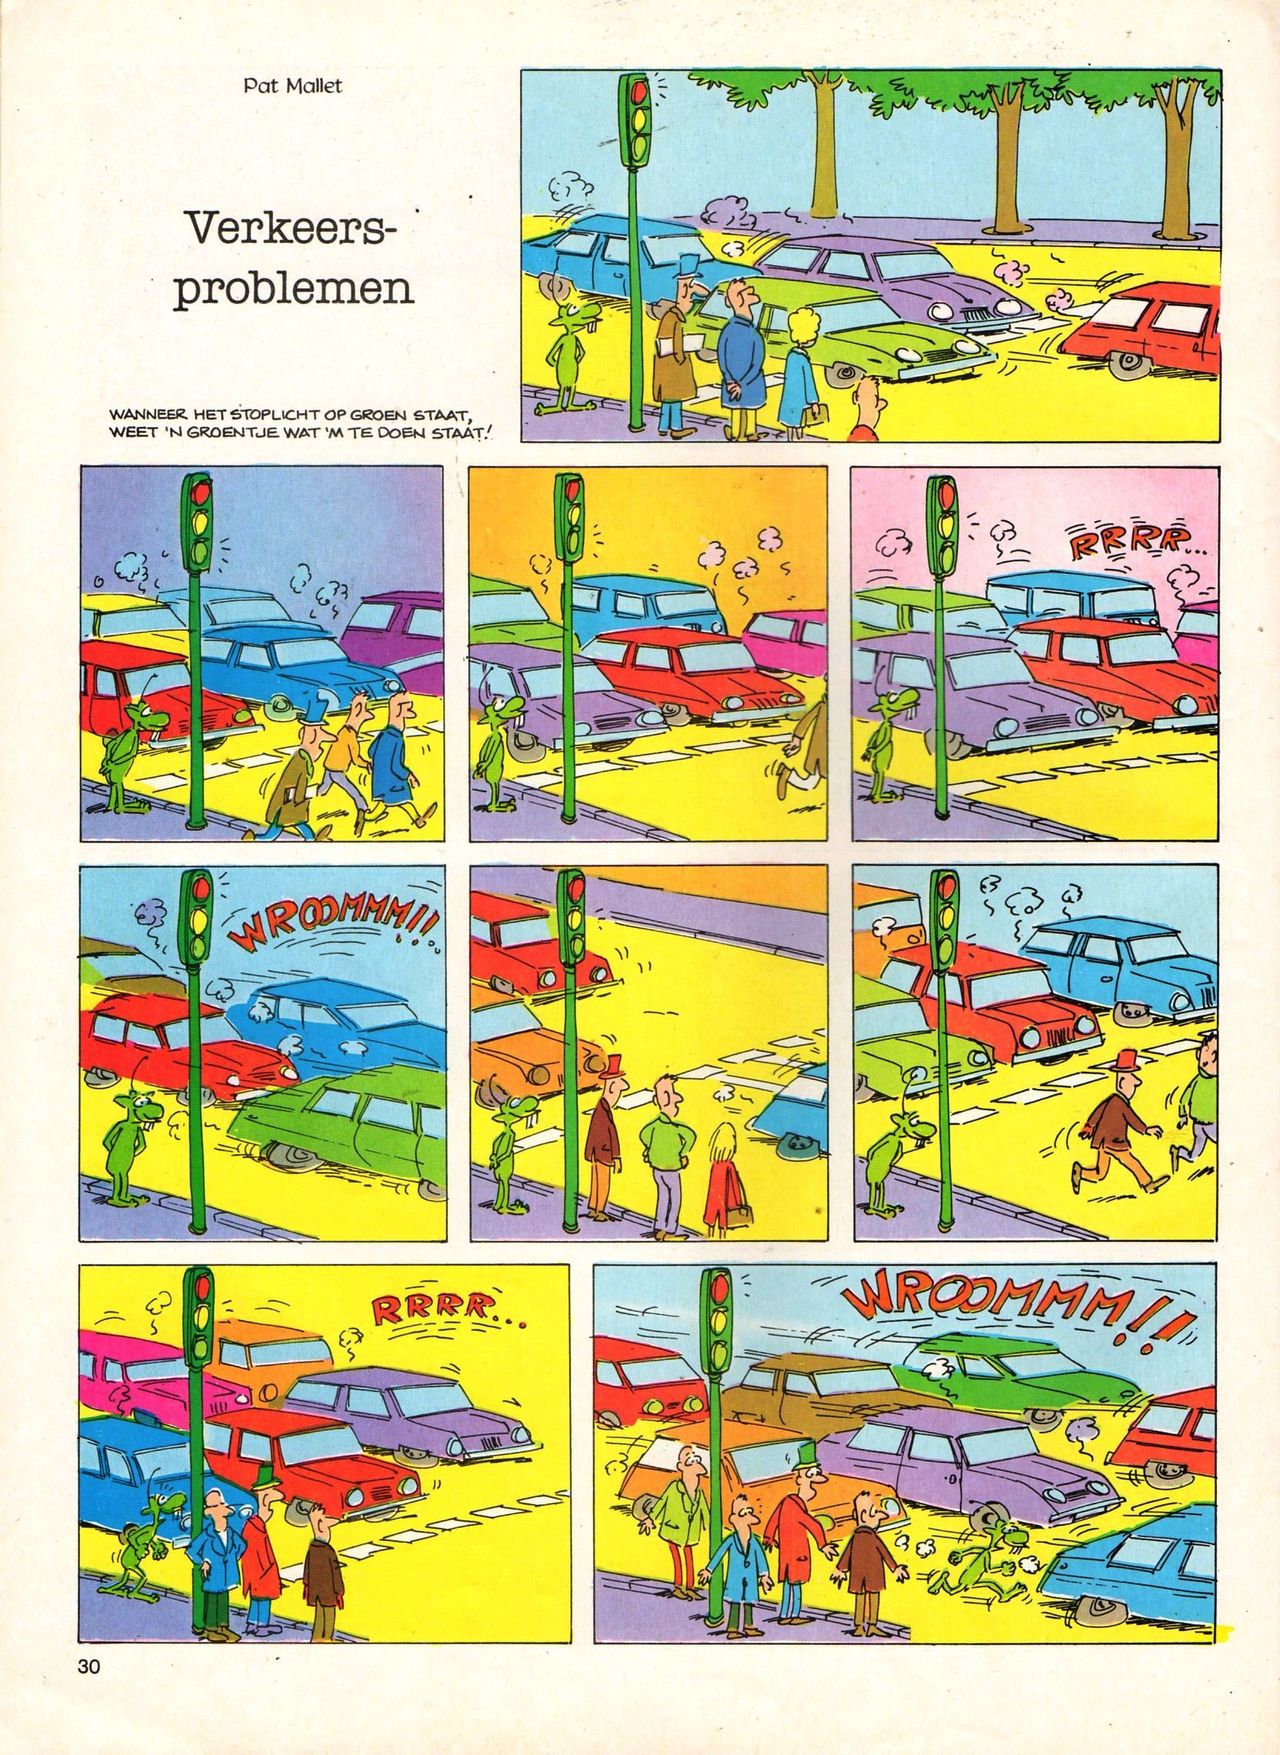 Het Is Groen En Het.. - 04 - Mag Ik Die Ballen.. OH, PARDON! (Dutch) Een oude humoristische serie van Pat Mallet 30